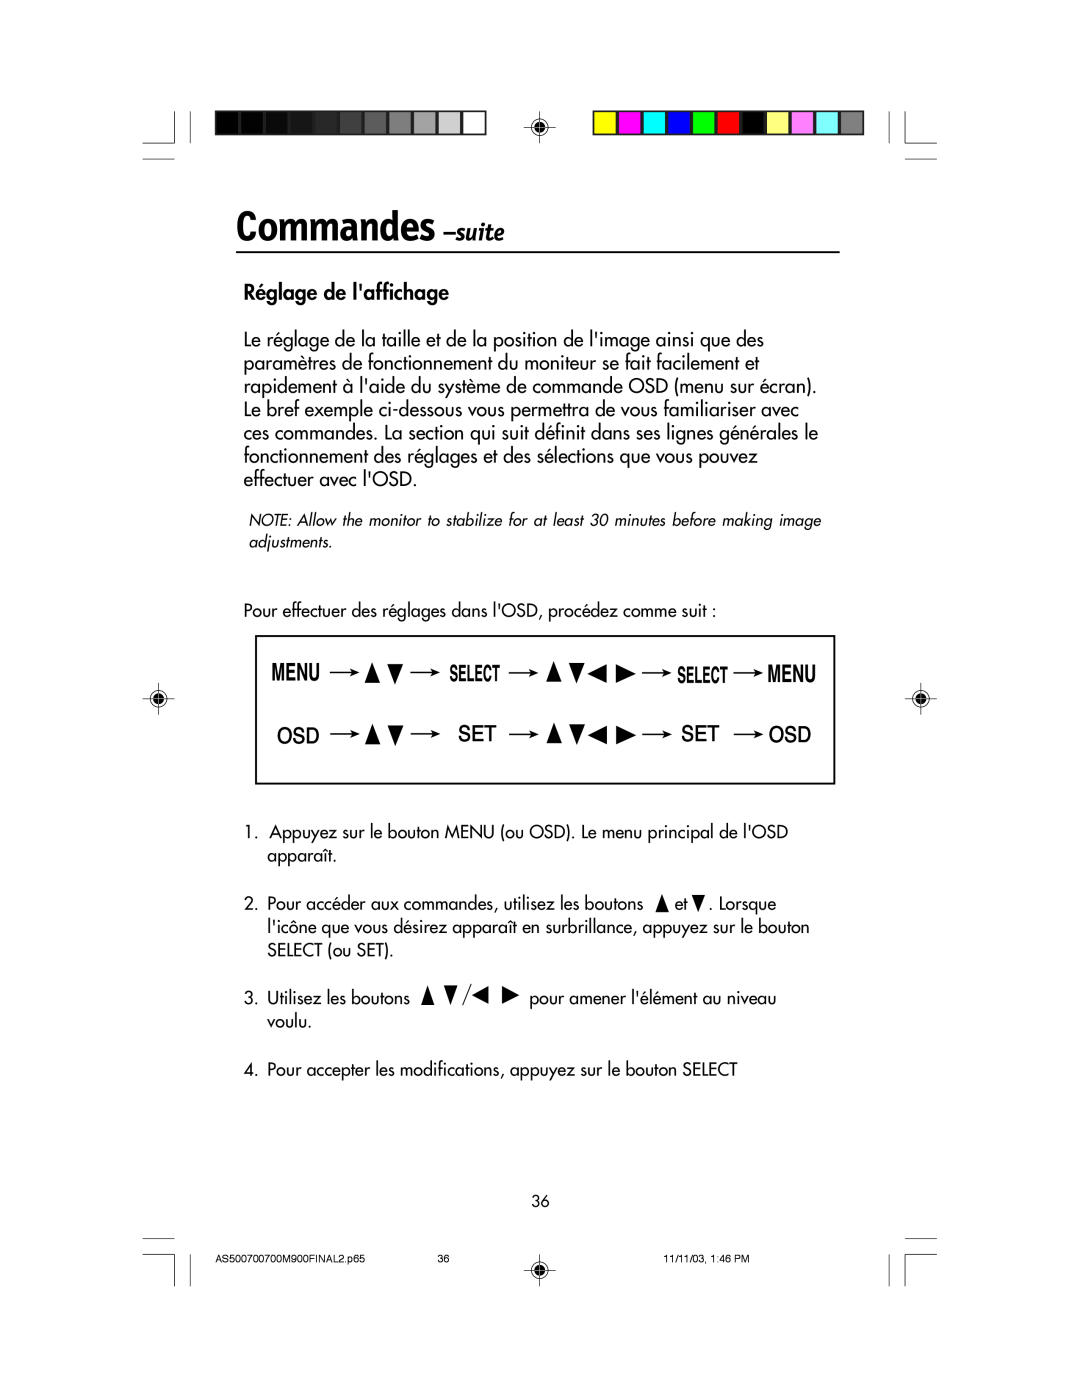 NEC 500, 700, 700M, 900 manual Commandes -suite, Réglage de laffichage 